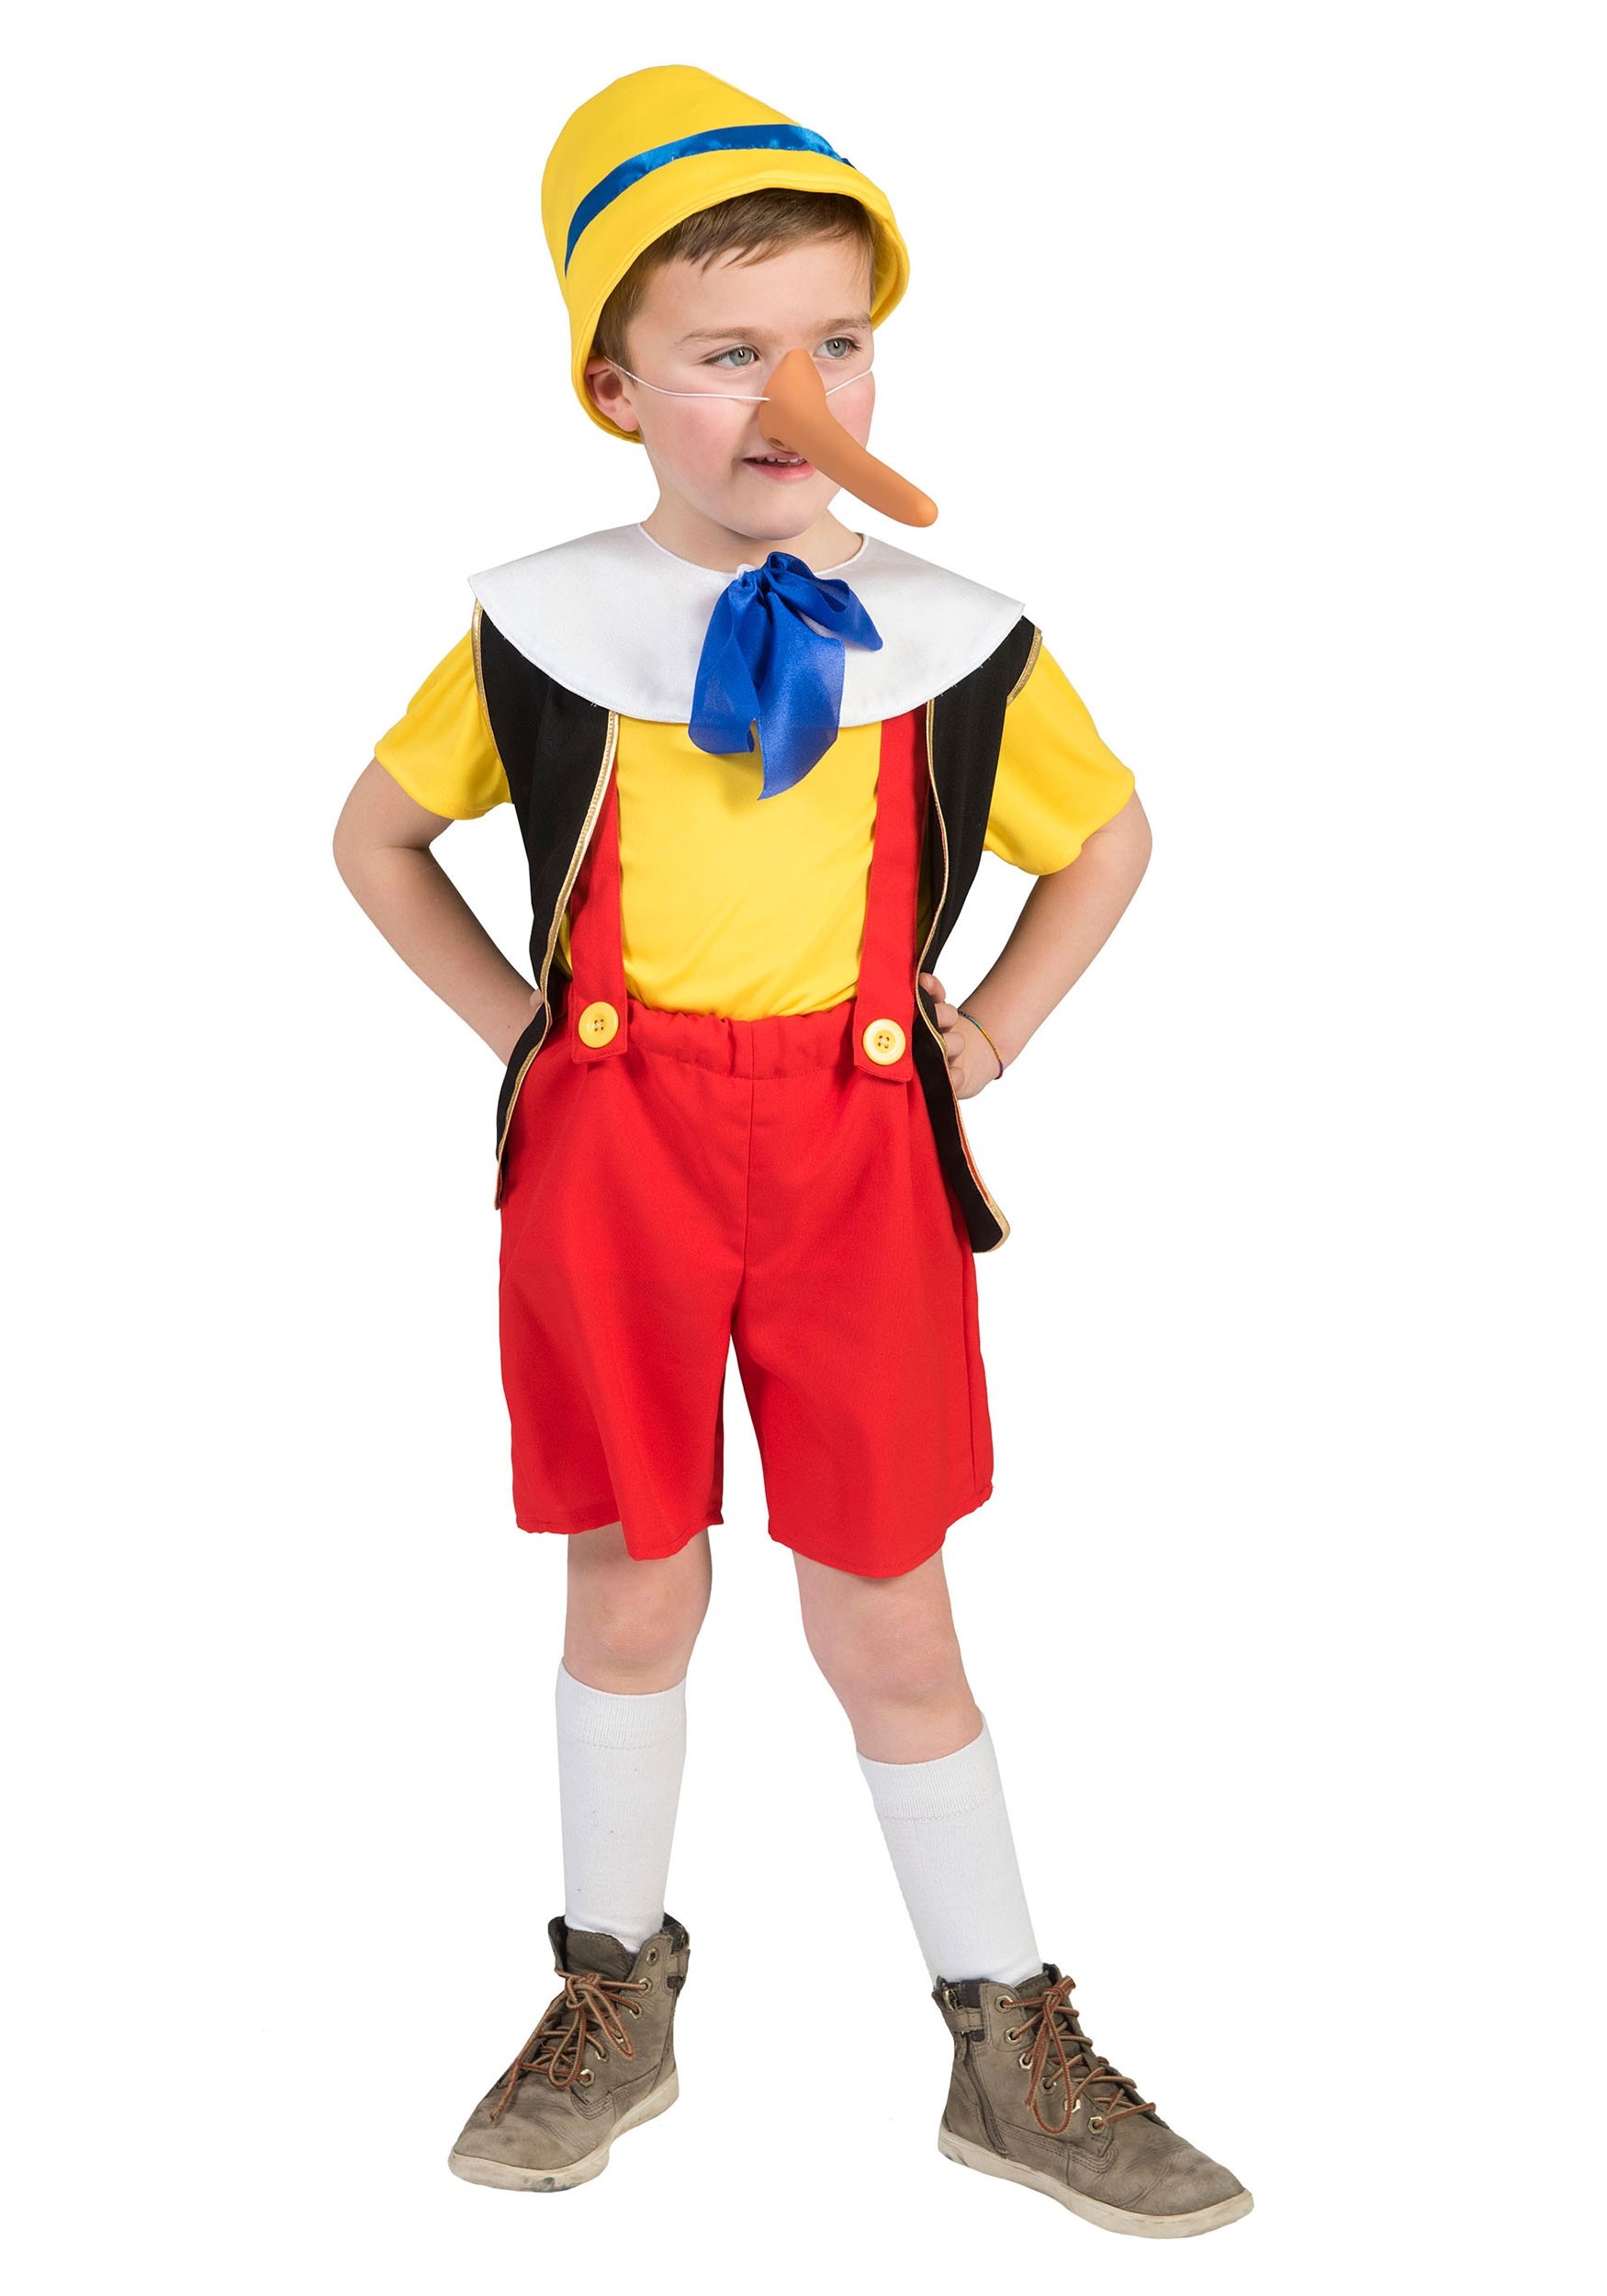 Girly Pinocchio Costume Pinocchio Costume.